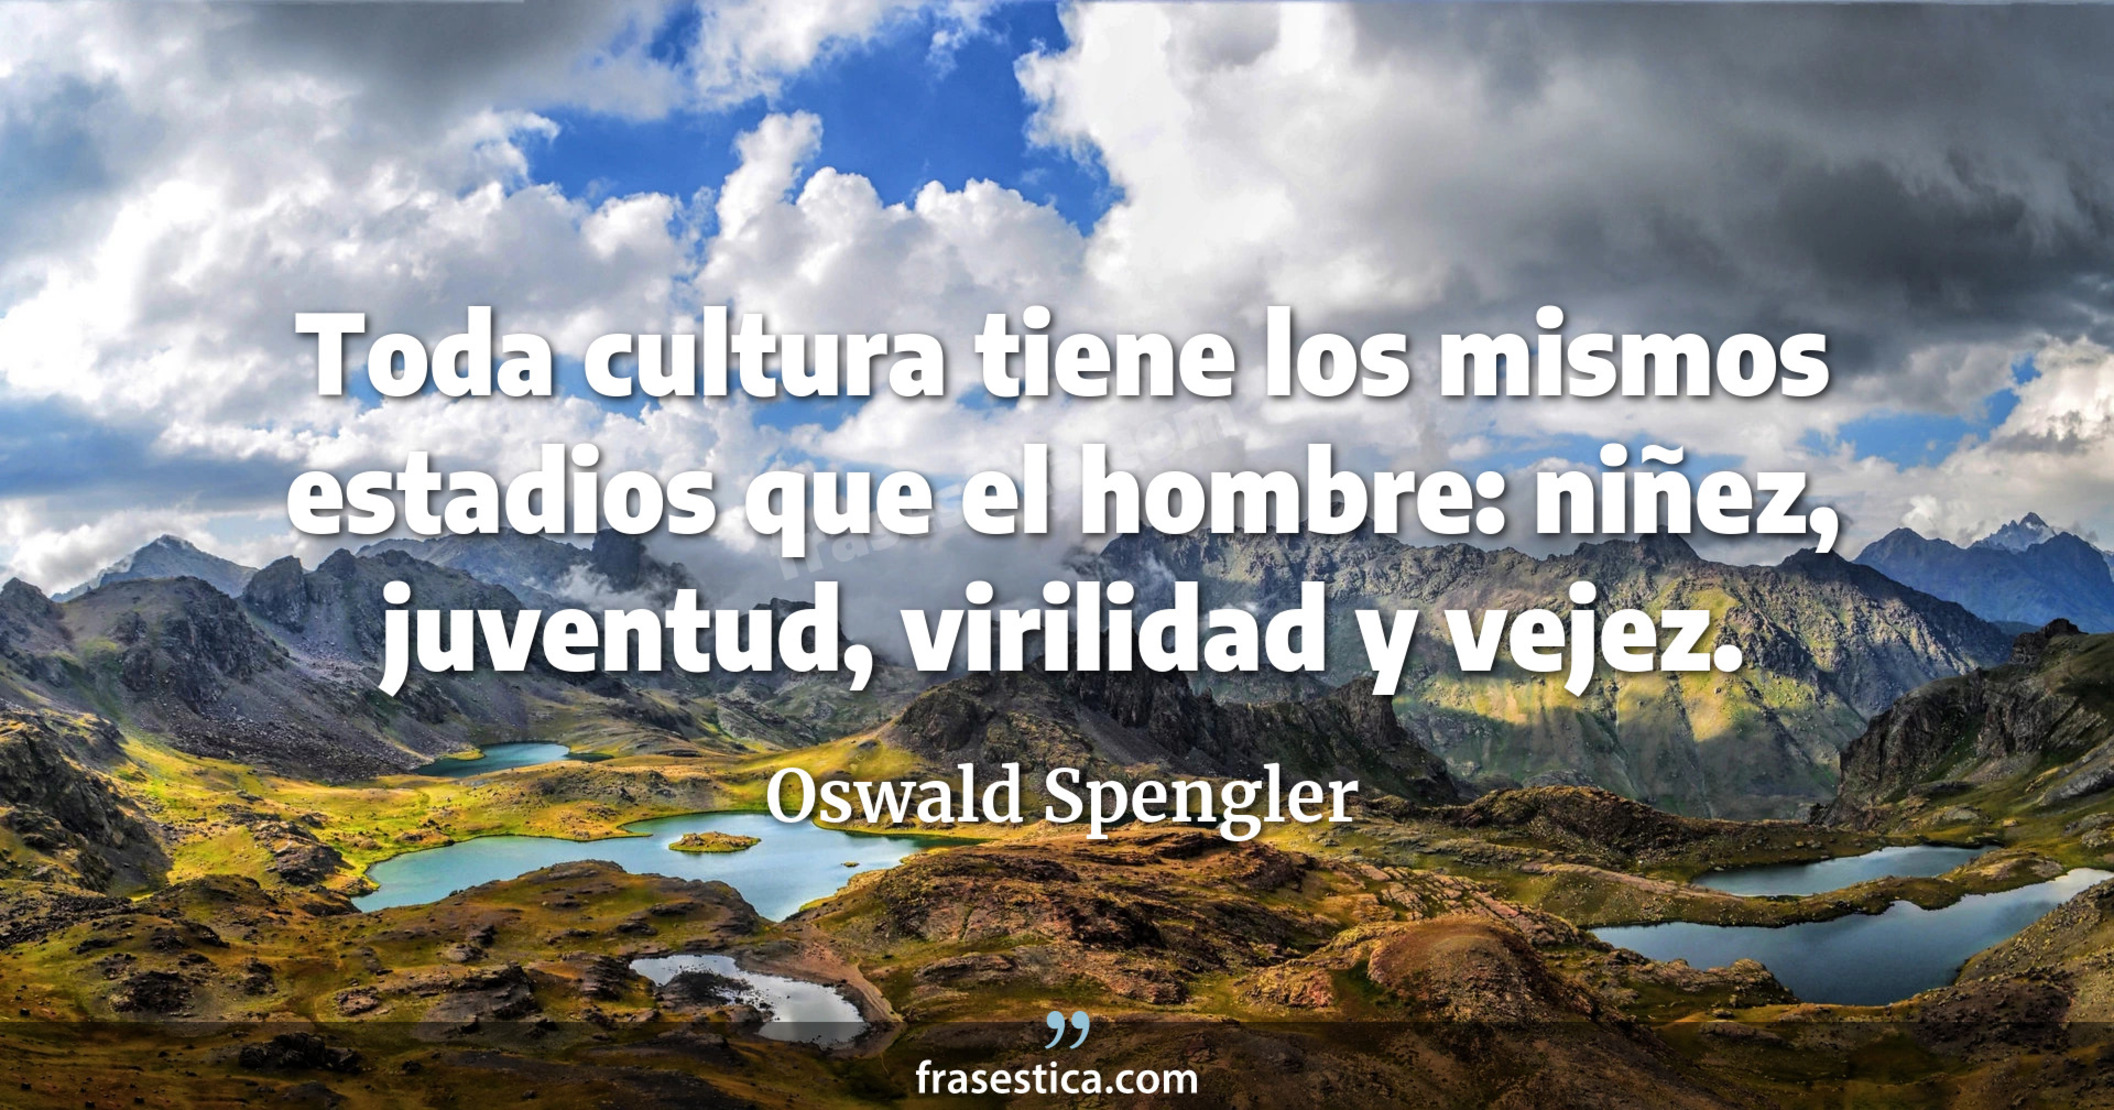 Toda cultura tiene los mismos estadios que el hombre: niñez, juventud, virilidad y vejez. - Oswald Spengler